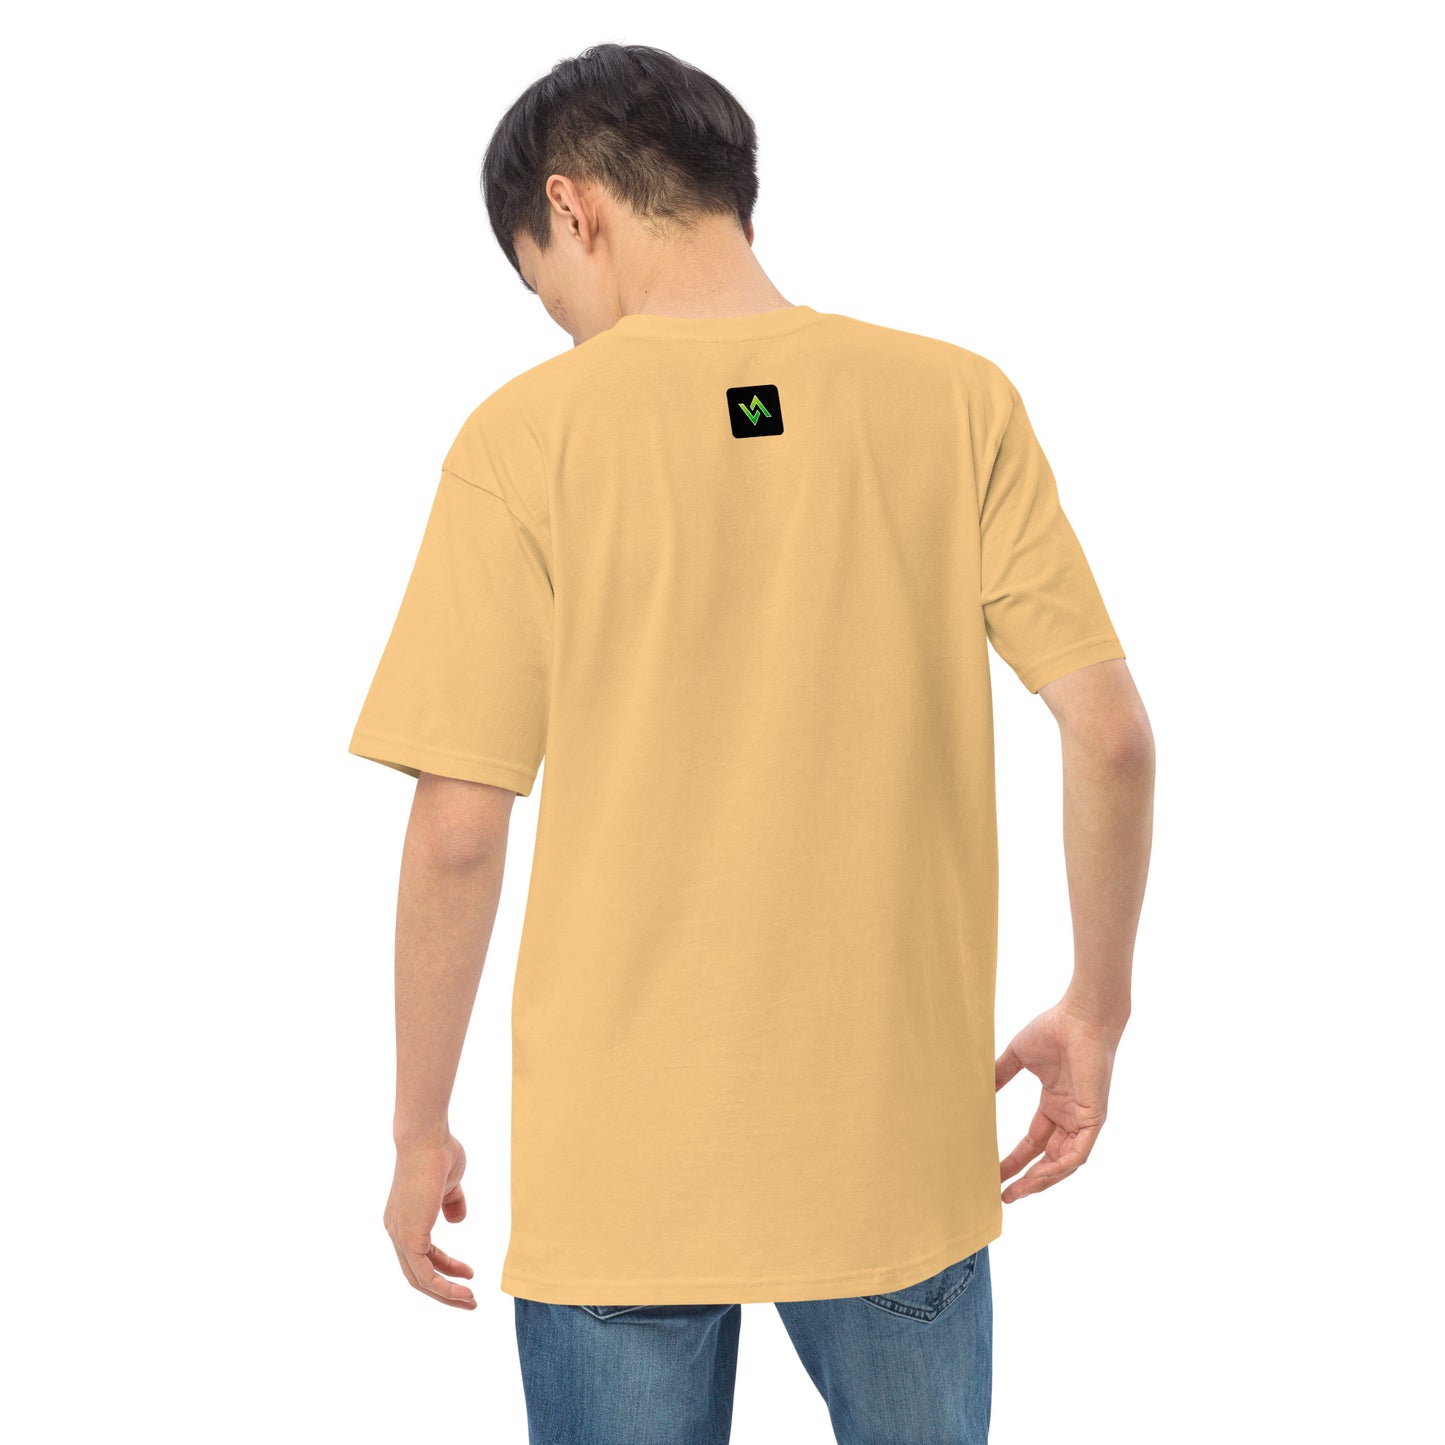 BANG! T-Shirt